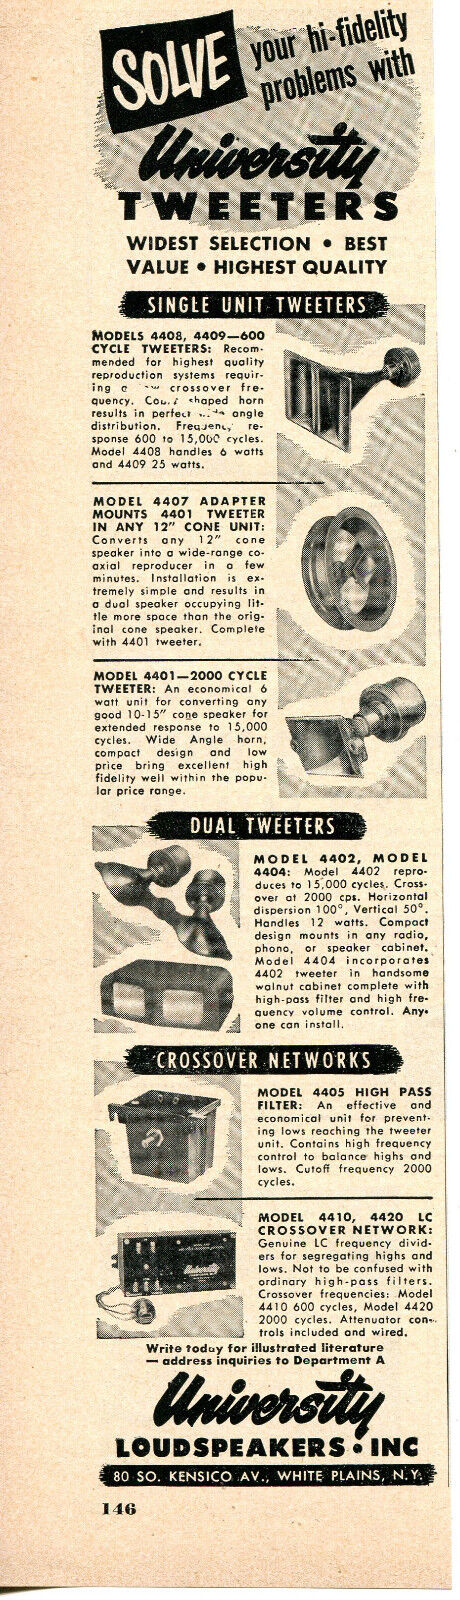 1949 Print Ad of University Loudspeakers Inc Tweeters & Crossover Networks   